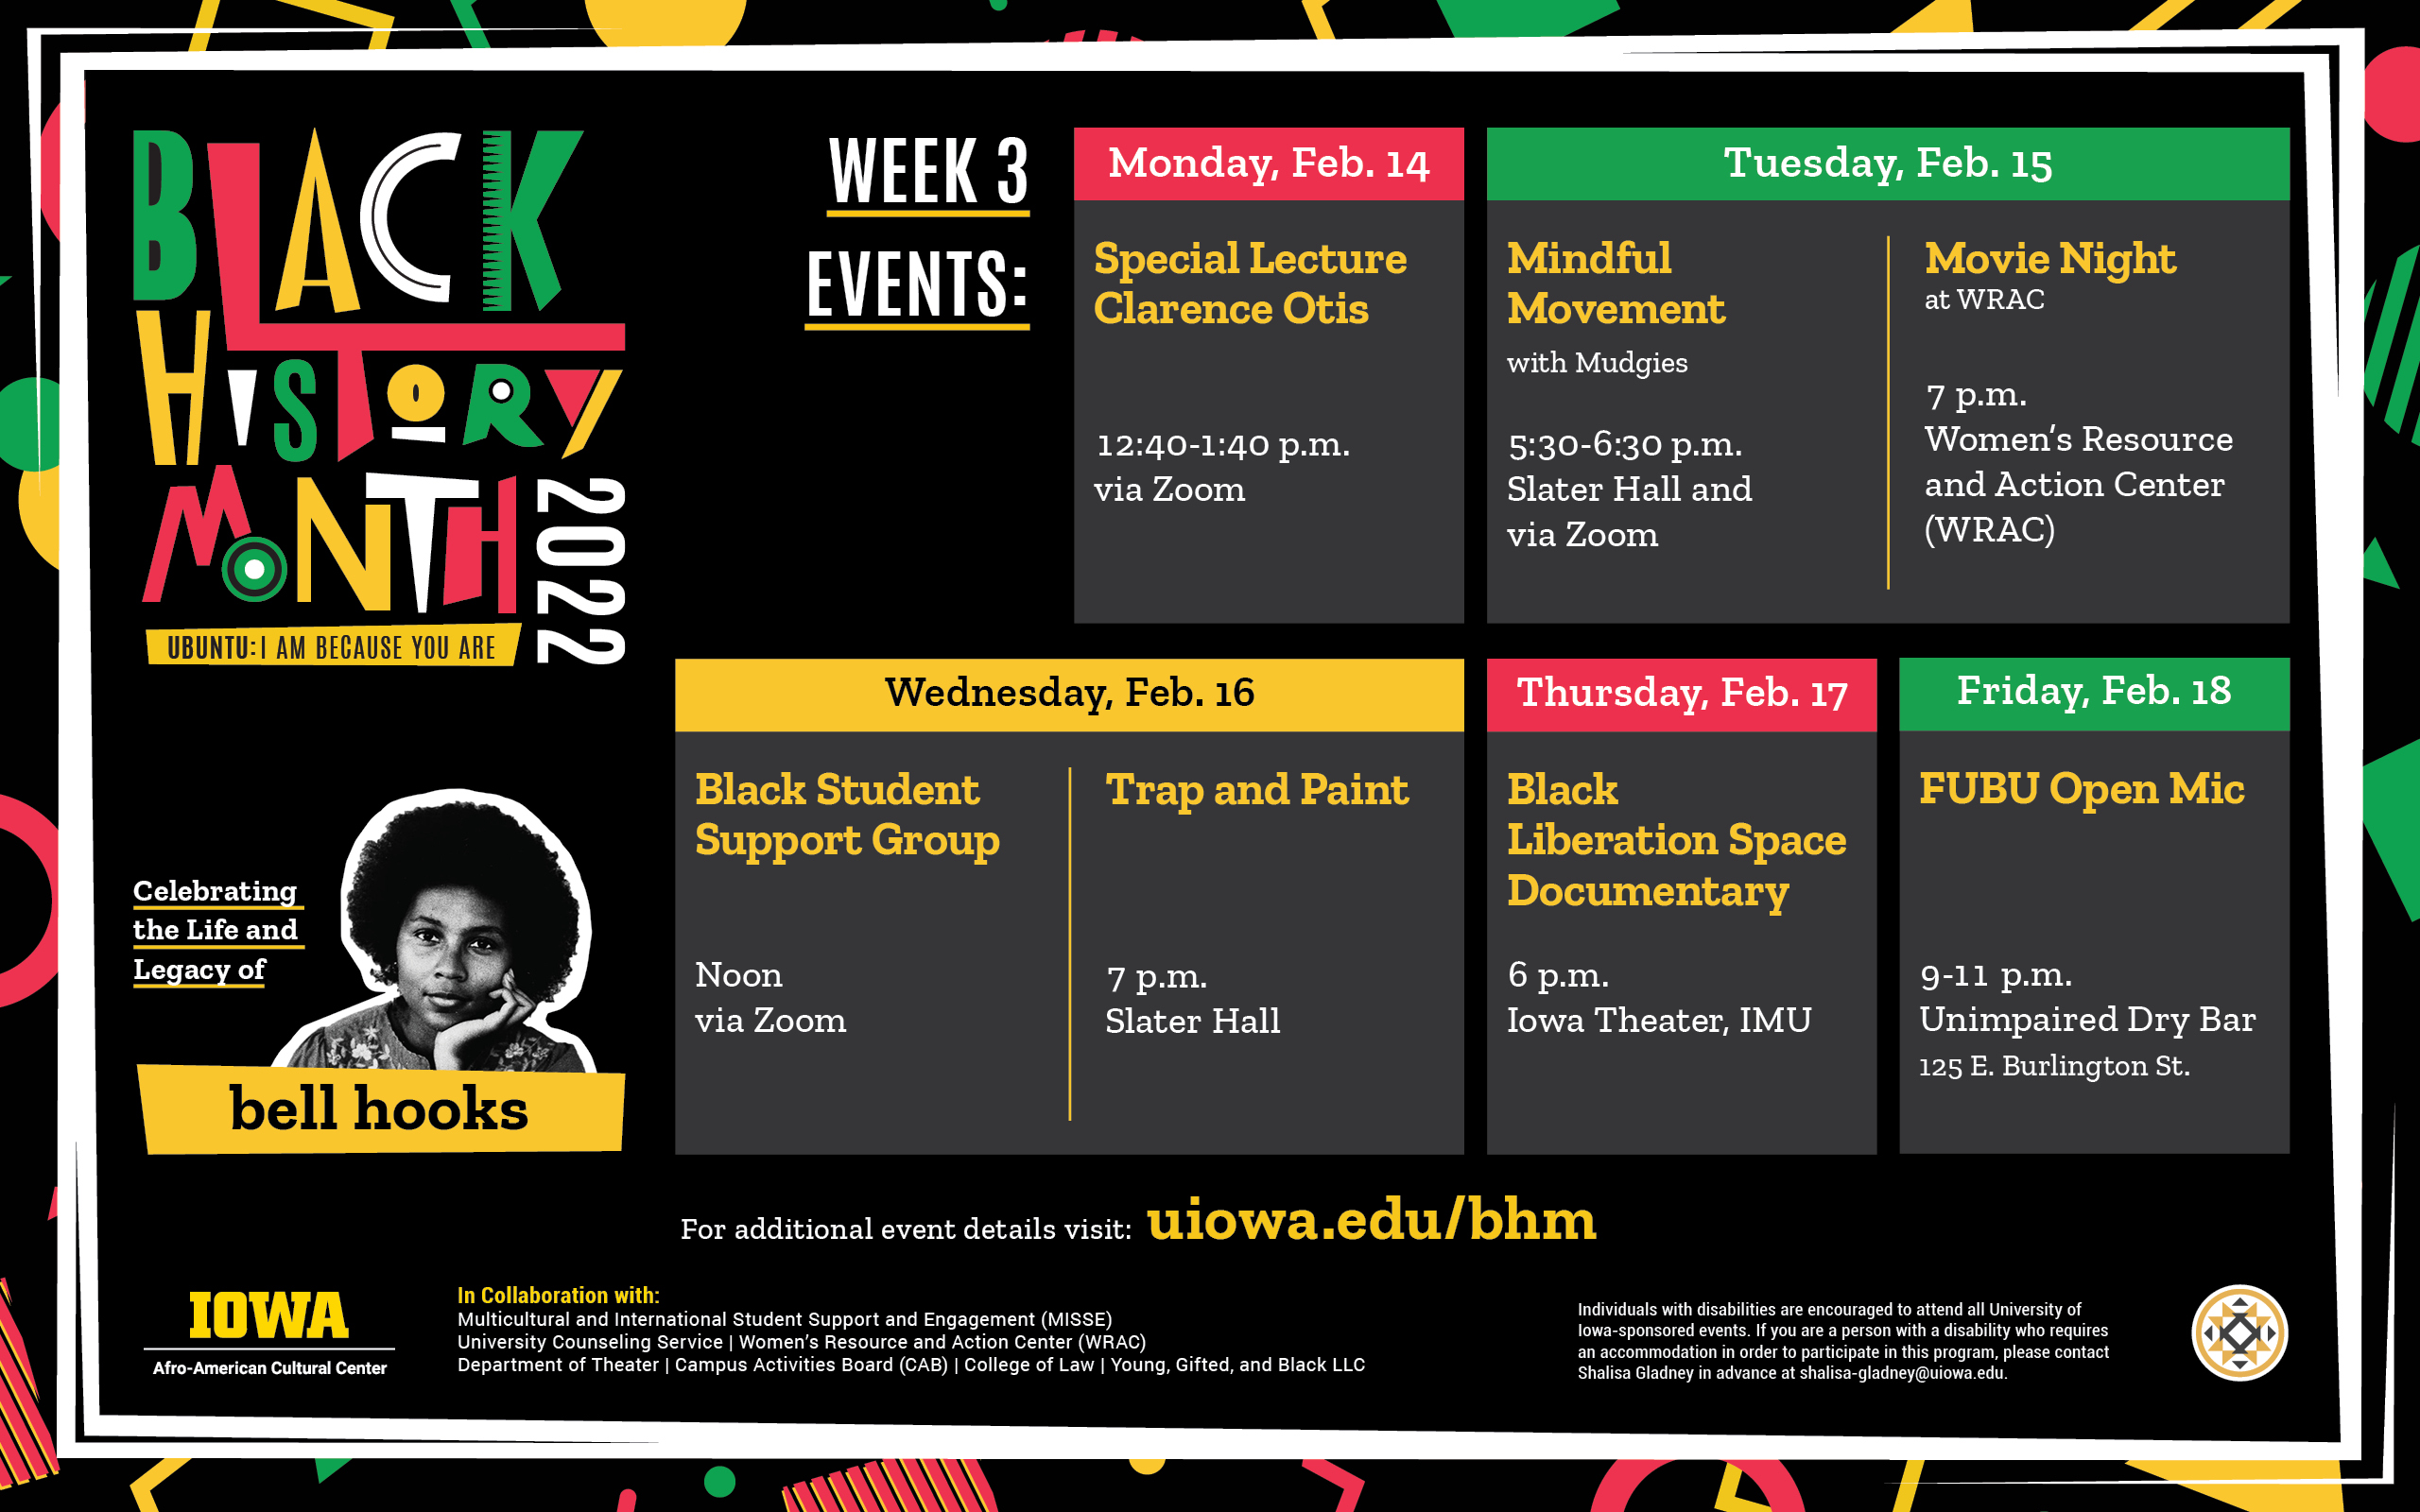 Black History Month Events. For details visit uiowa.edu/bhm